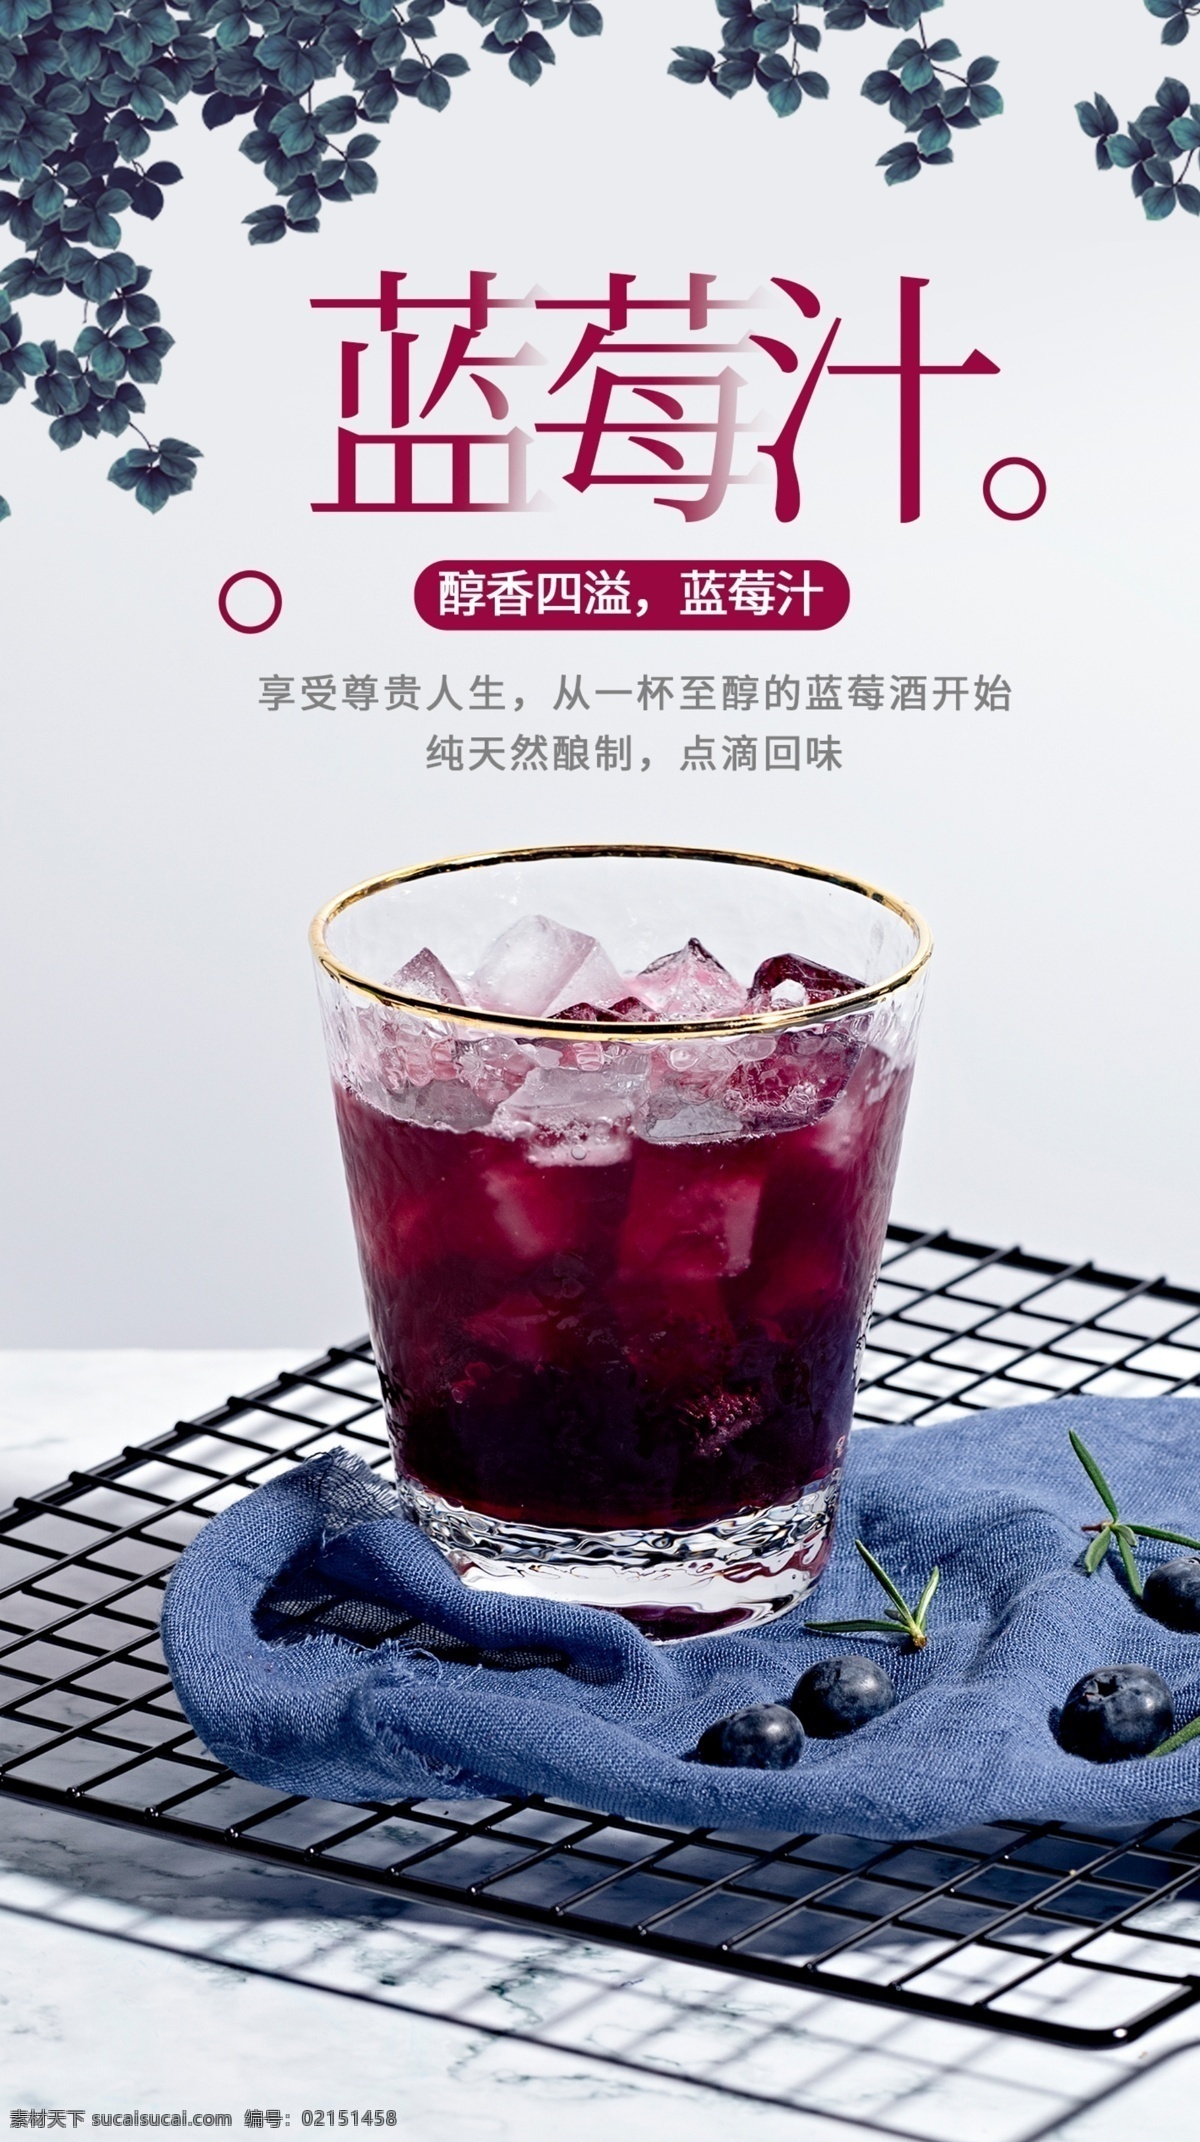 蓝莓 汁 饮品 饮料 活动 海报 素材图片 蓝莓汁 甜品 类